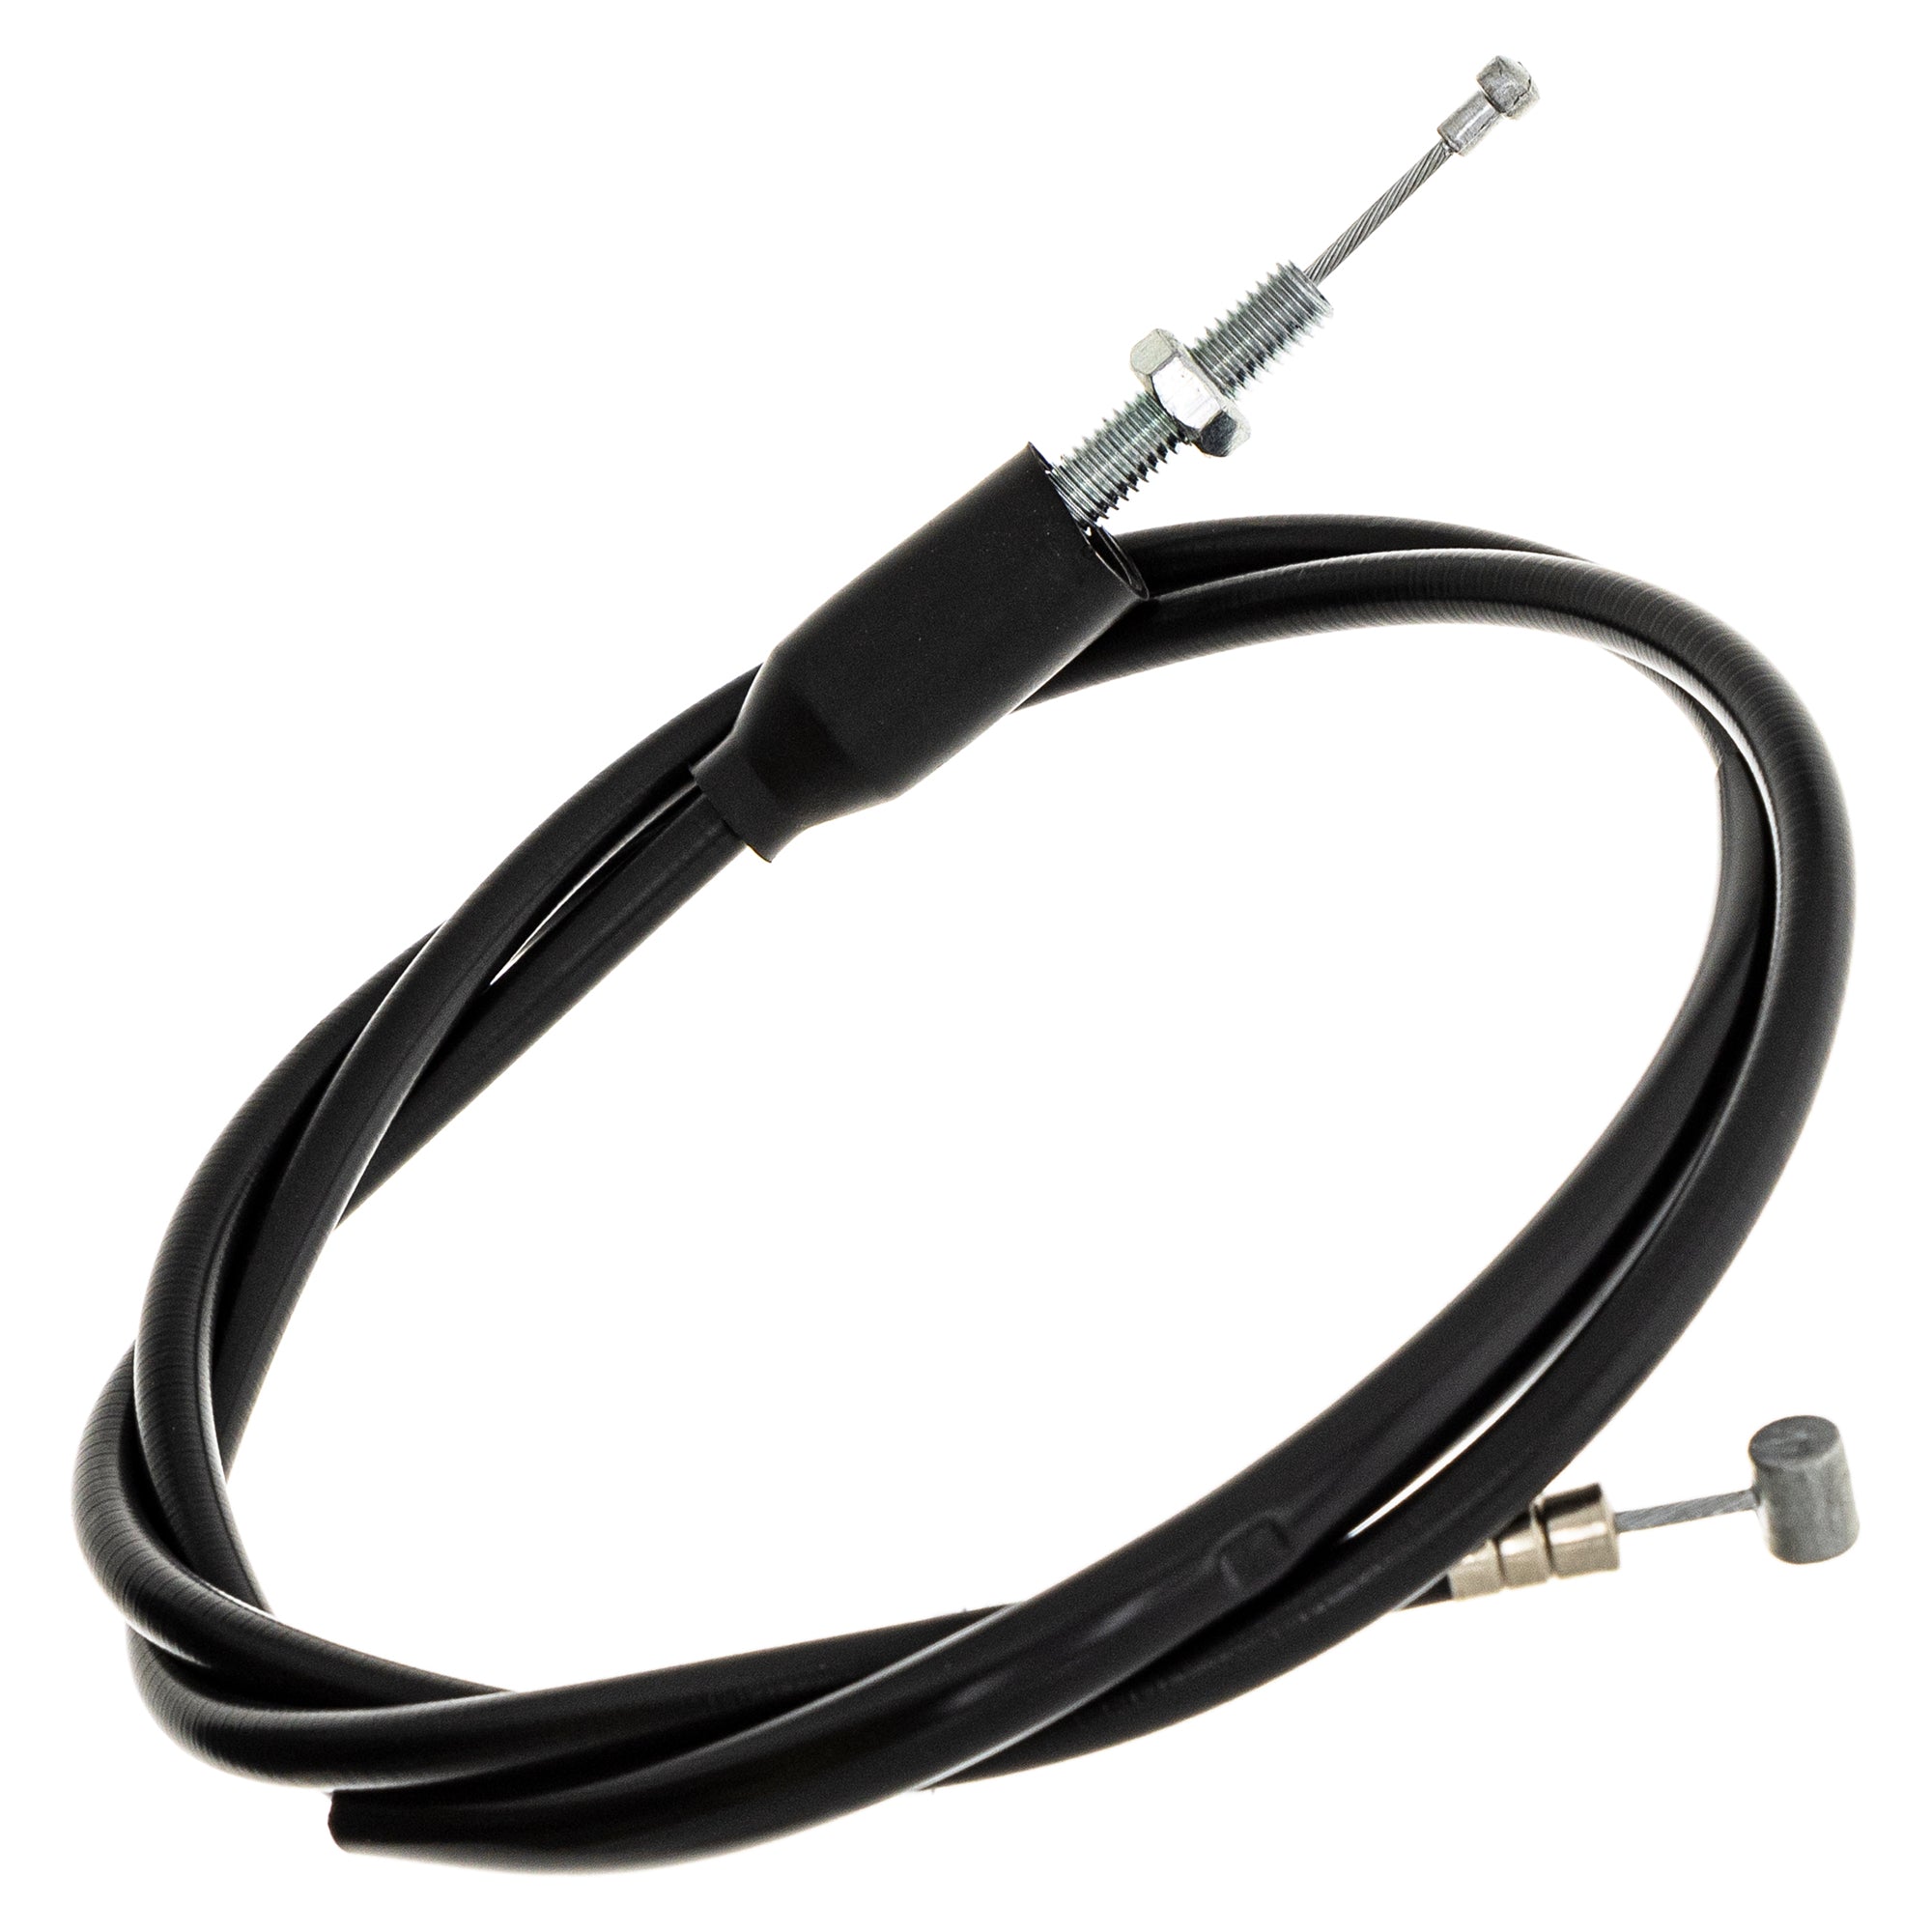 Clutch Cable for Suzuki GS1000E GS750 GS750E GS750L 58200-45201